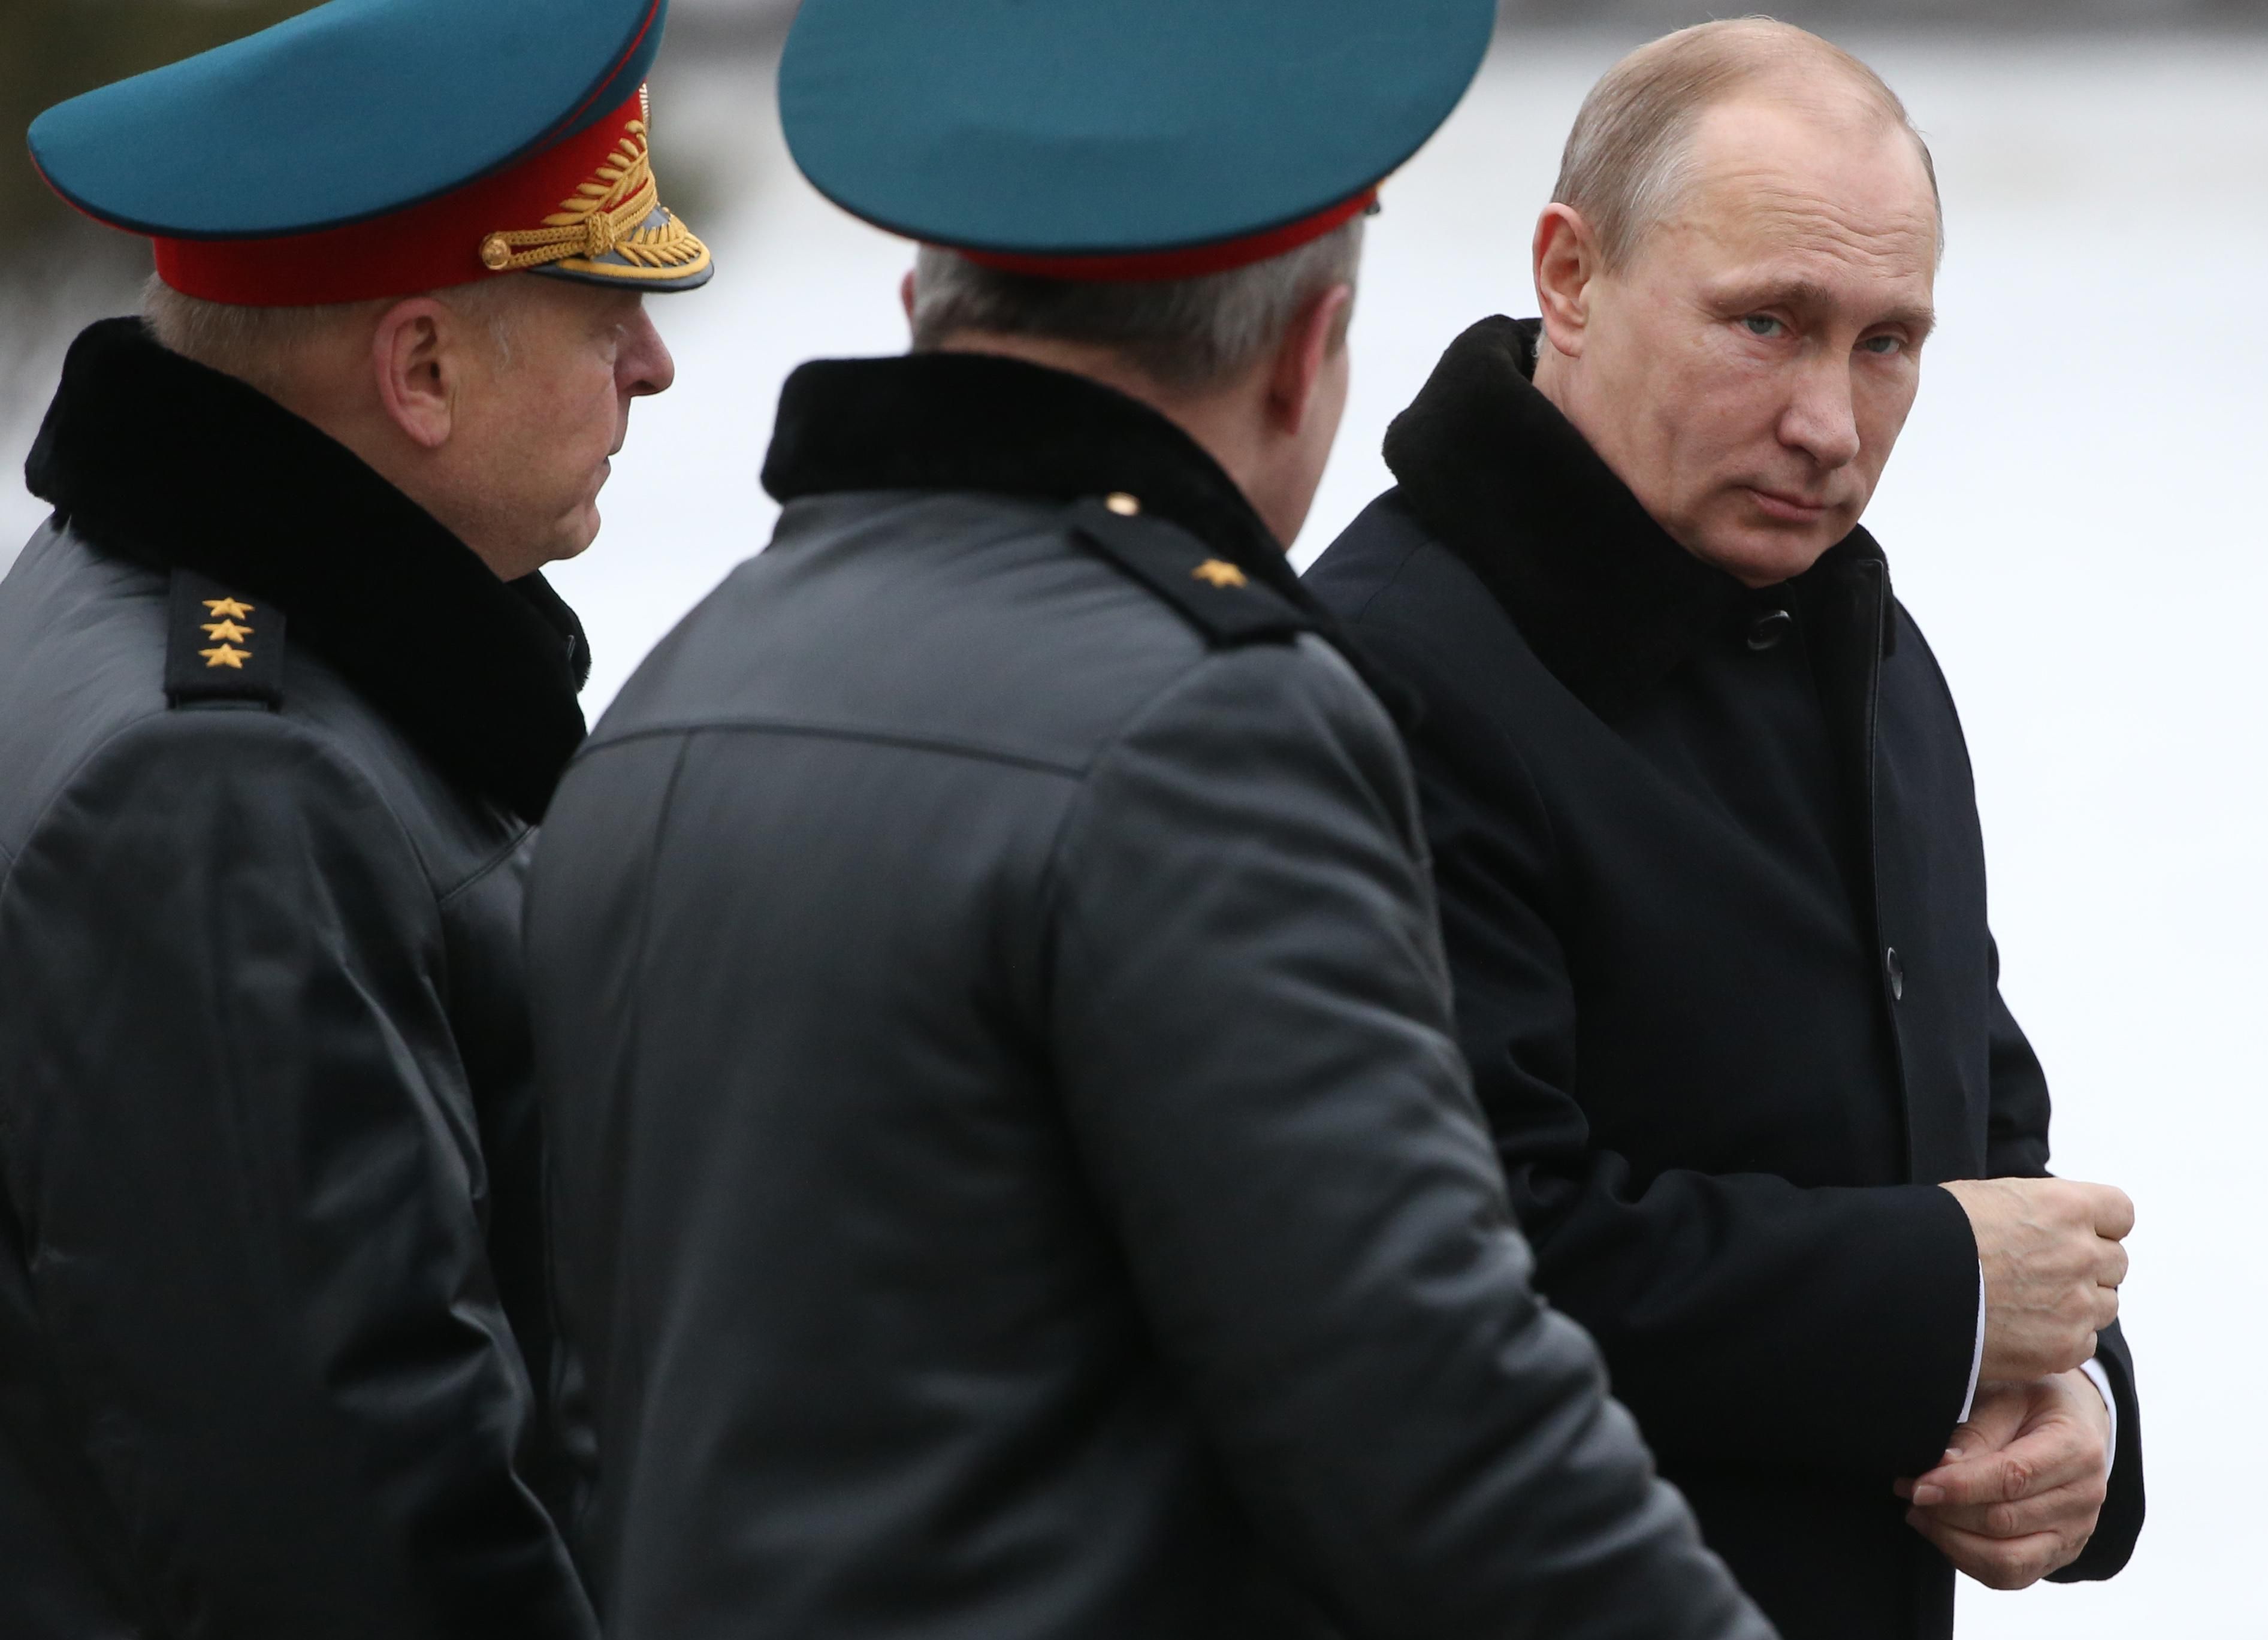 Сторонников Путина прижмут: США могут увеличить помощь Украине - Новости России и Украины - 24 Канал